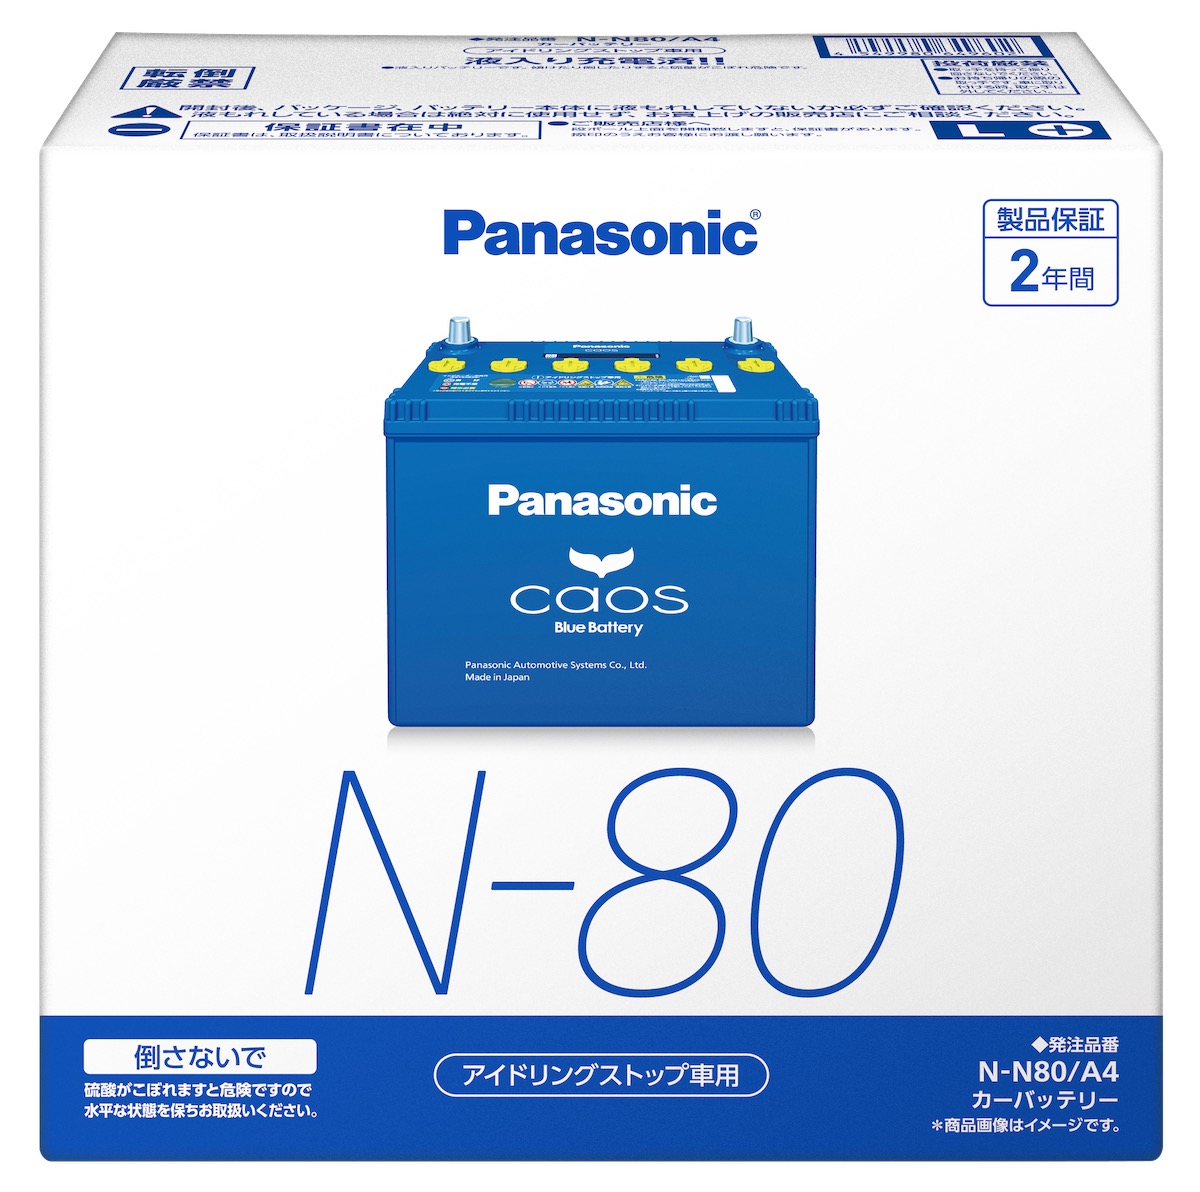 パナソニックアイドリングストップ用バッテリー N-N80/A4